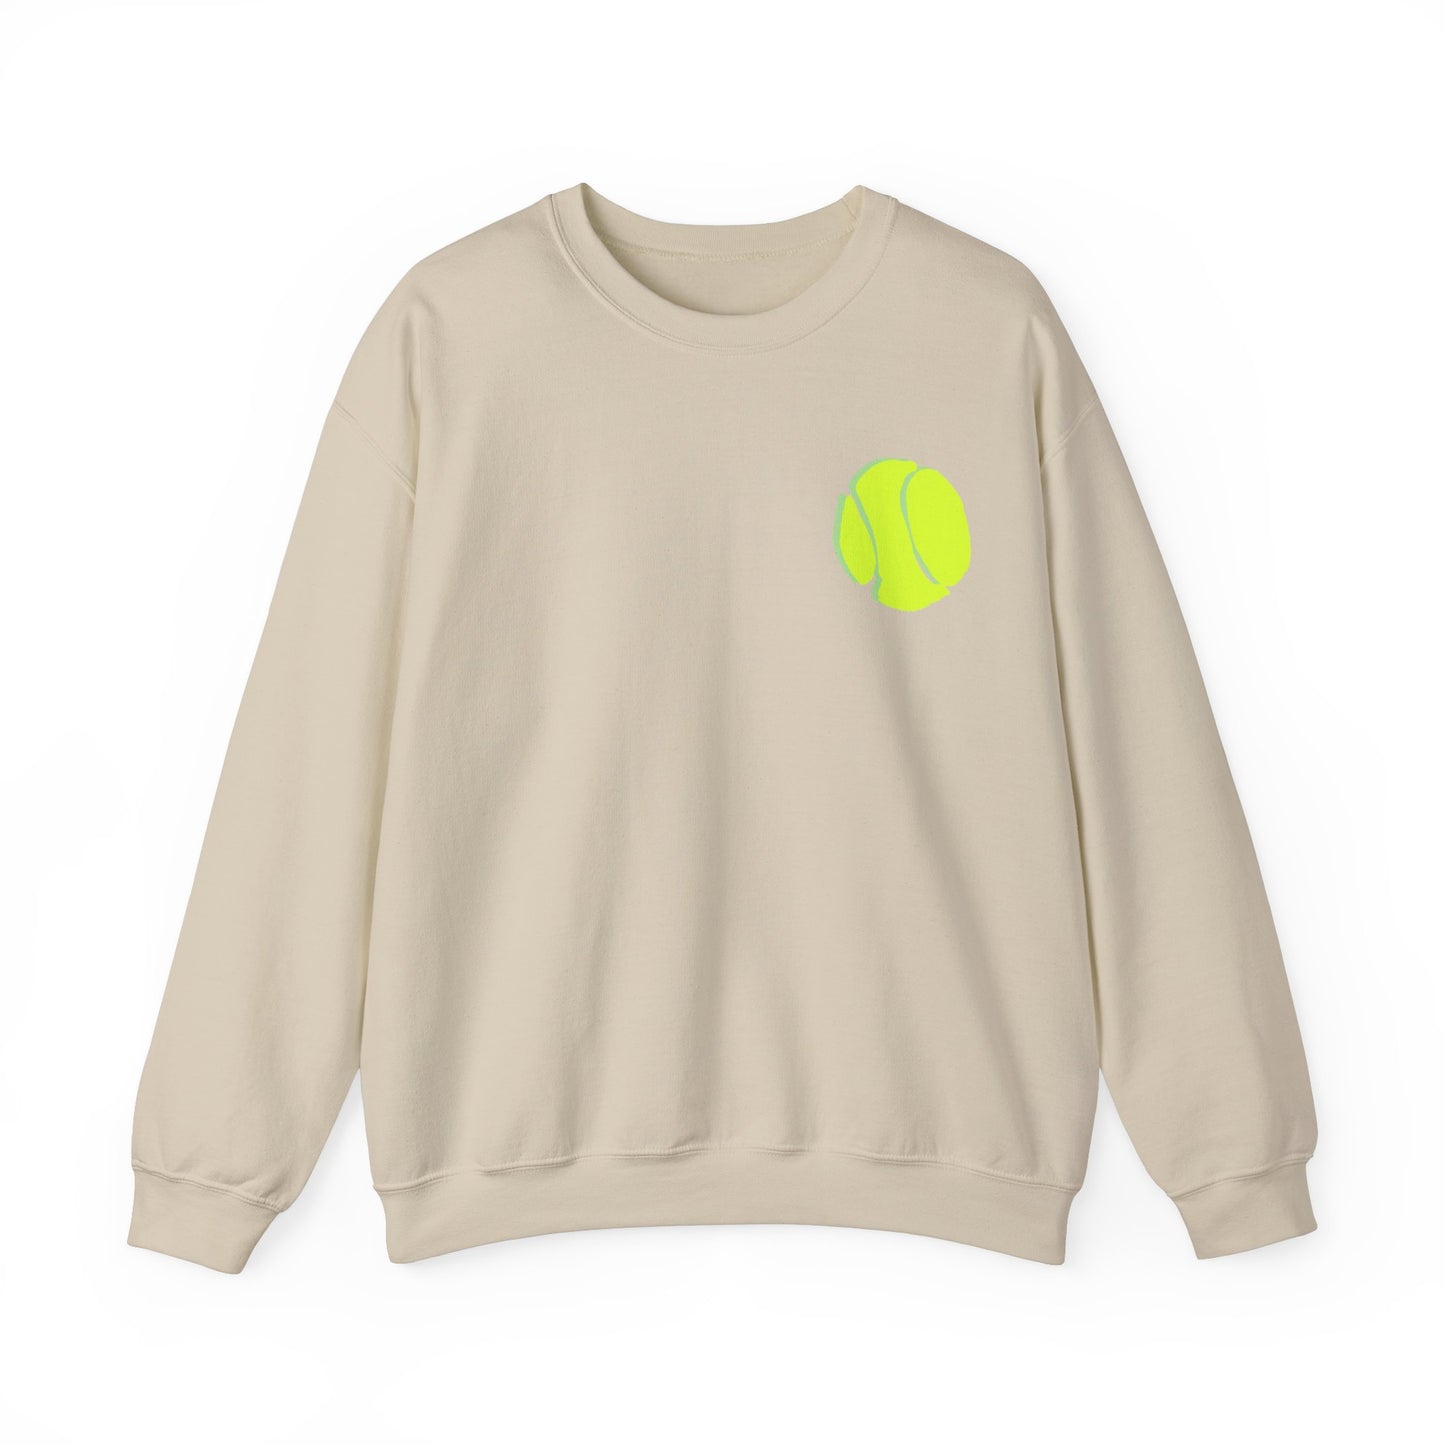 Carrie Song Art Signature Tennis Ball Sweatshirt